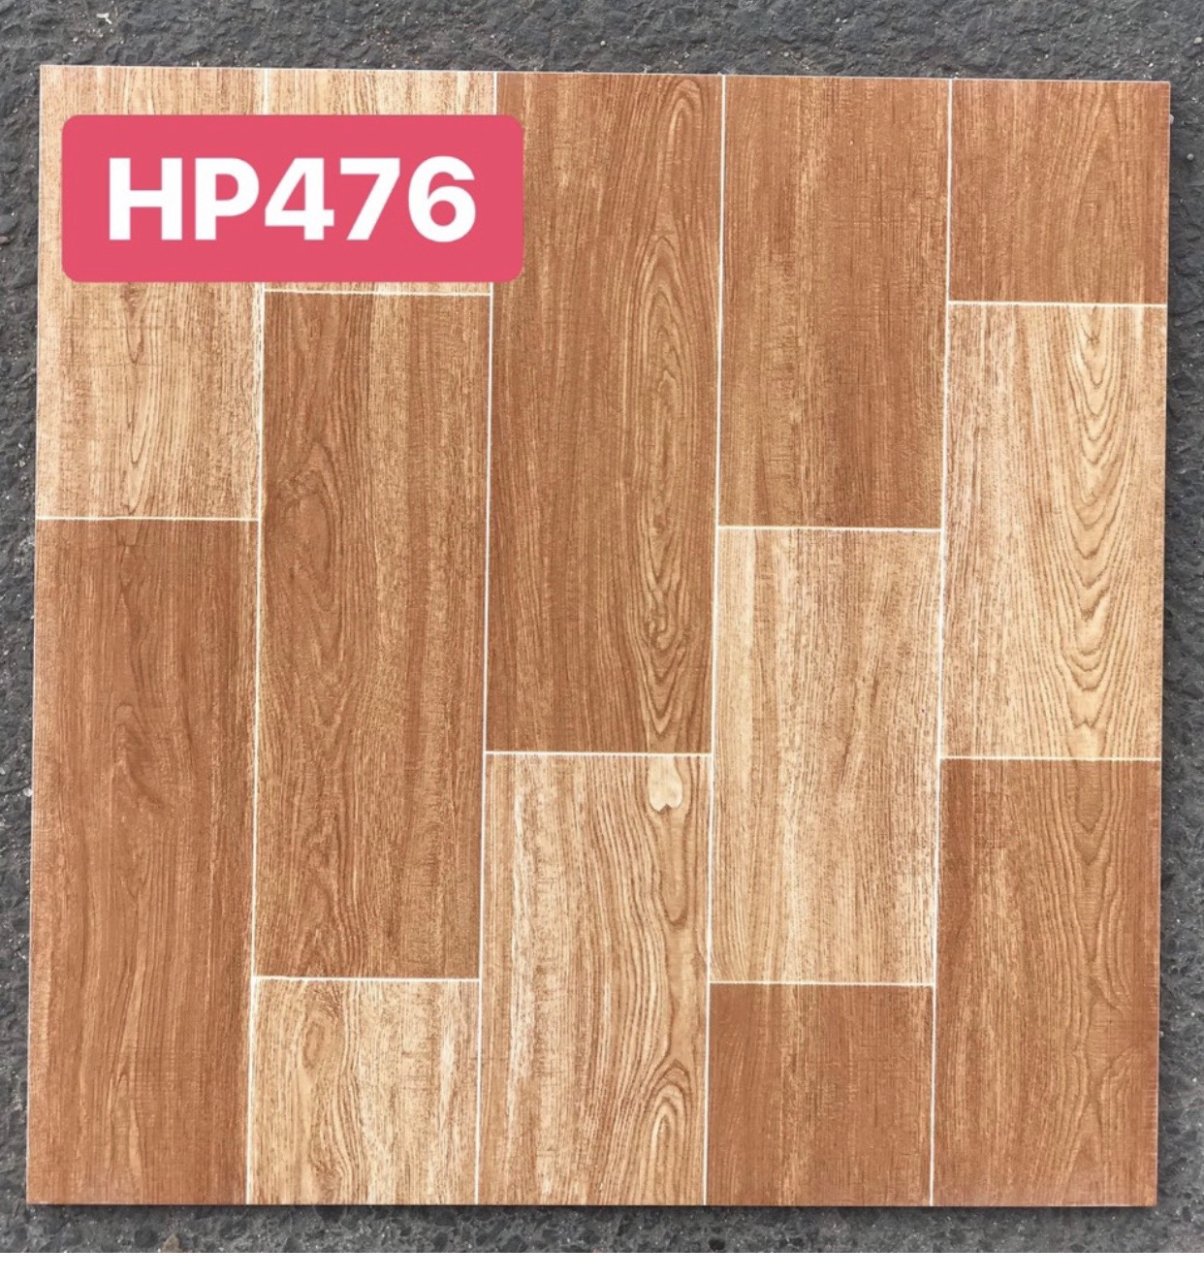 Nếu bạn đang tìm kiếm lựa chọn sàn đỏ lát nền giá rẻ, men lát nền giá rẻ 40x40 vân gỗ nâu đỏ PAK 476 là một sự lựa chọn tuyệt vời. Với kiểu dáng đẹp và chất lượng cao, bạn sẽ không phải lo lắng về giá cả. Hãy trải nghiệm sự ấn tượng của vân gỗ nâu đỏ trên sàn nhà của bạn.